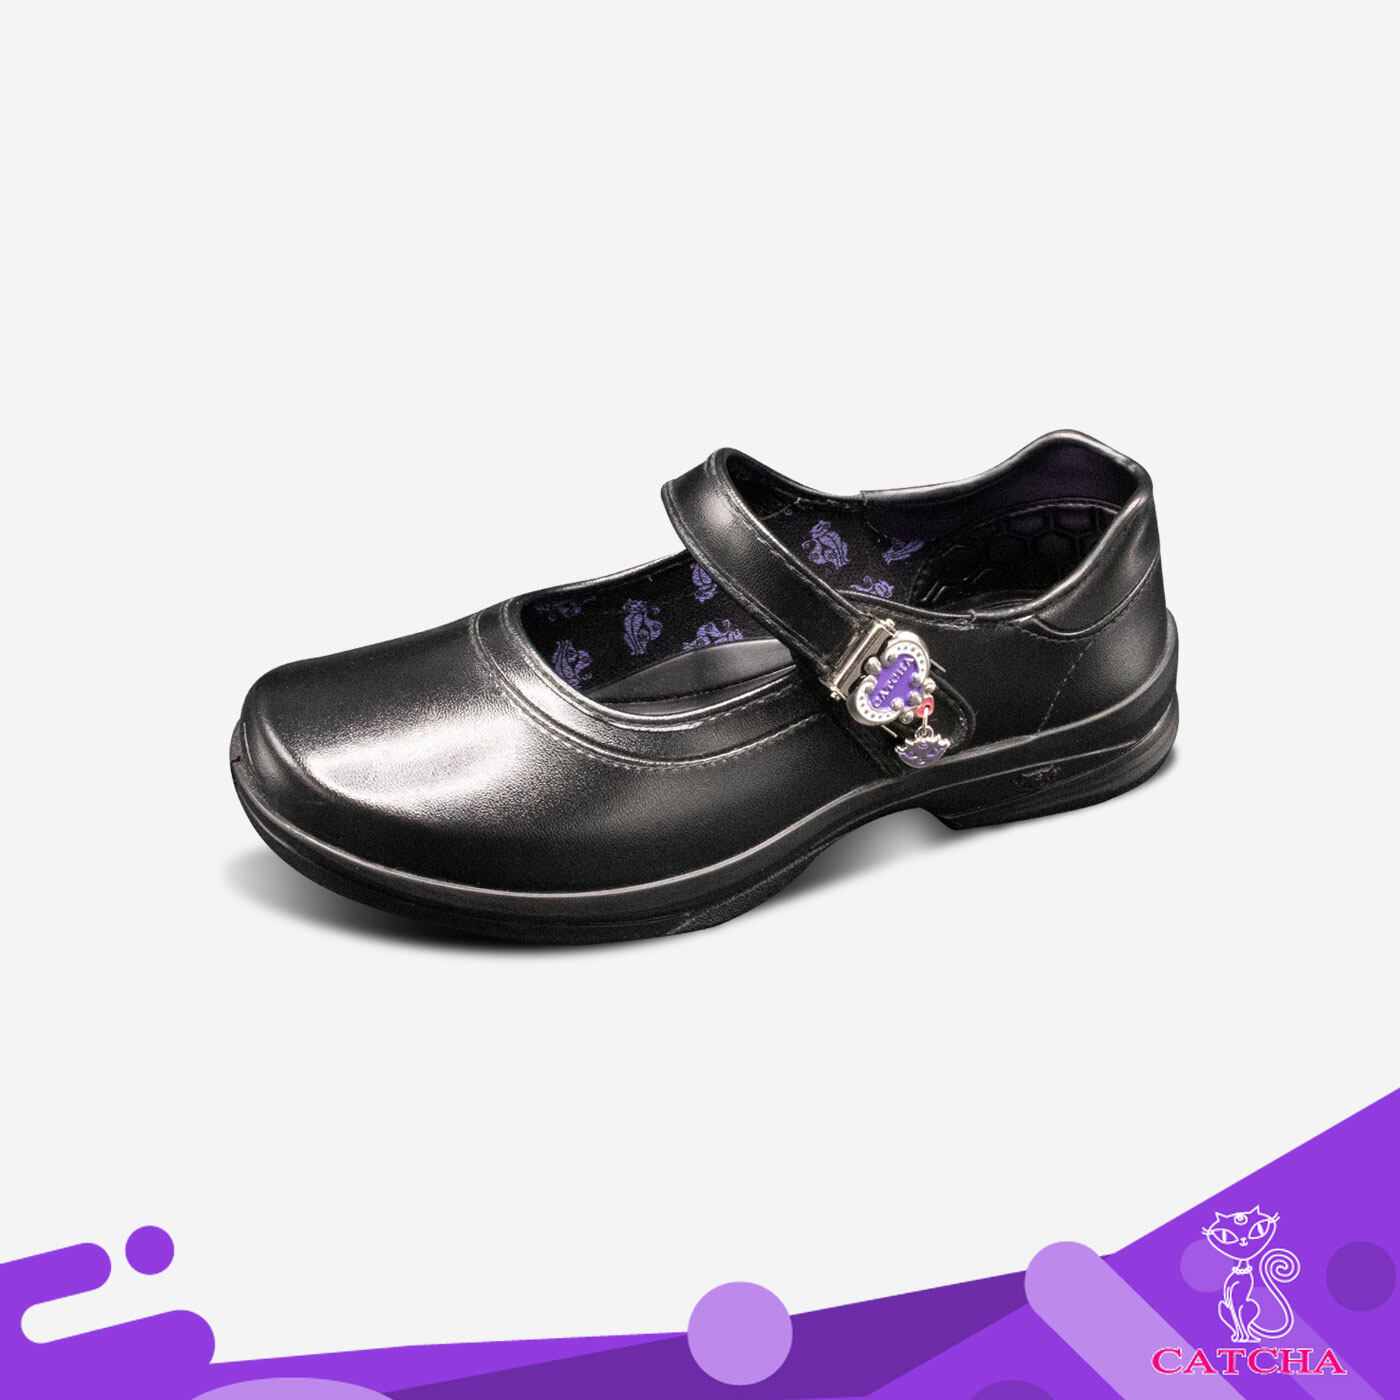 Catcha รองเท้าผู้หญิง รองเท้ามัธยม รองเท้านักเรียนหญิงแคทช่า รุ่นใหม่ล่าสุด  สีดำ Size 30 - 42 พื้นนุ่ม ใส่สบายเท้า